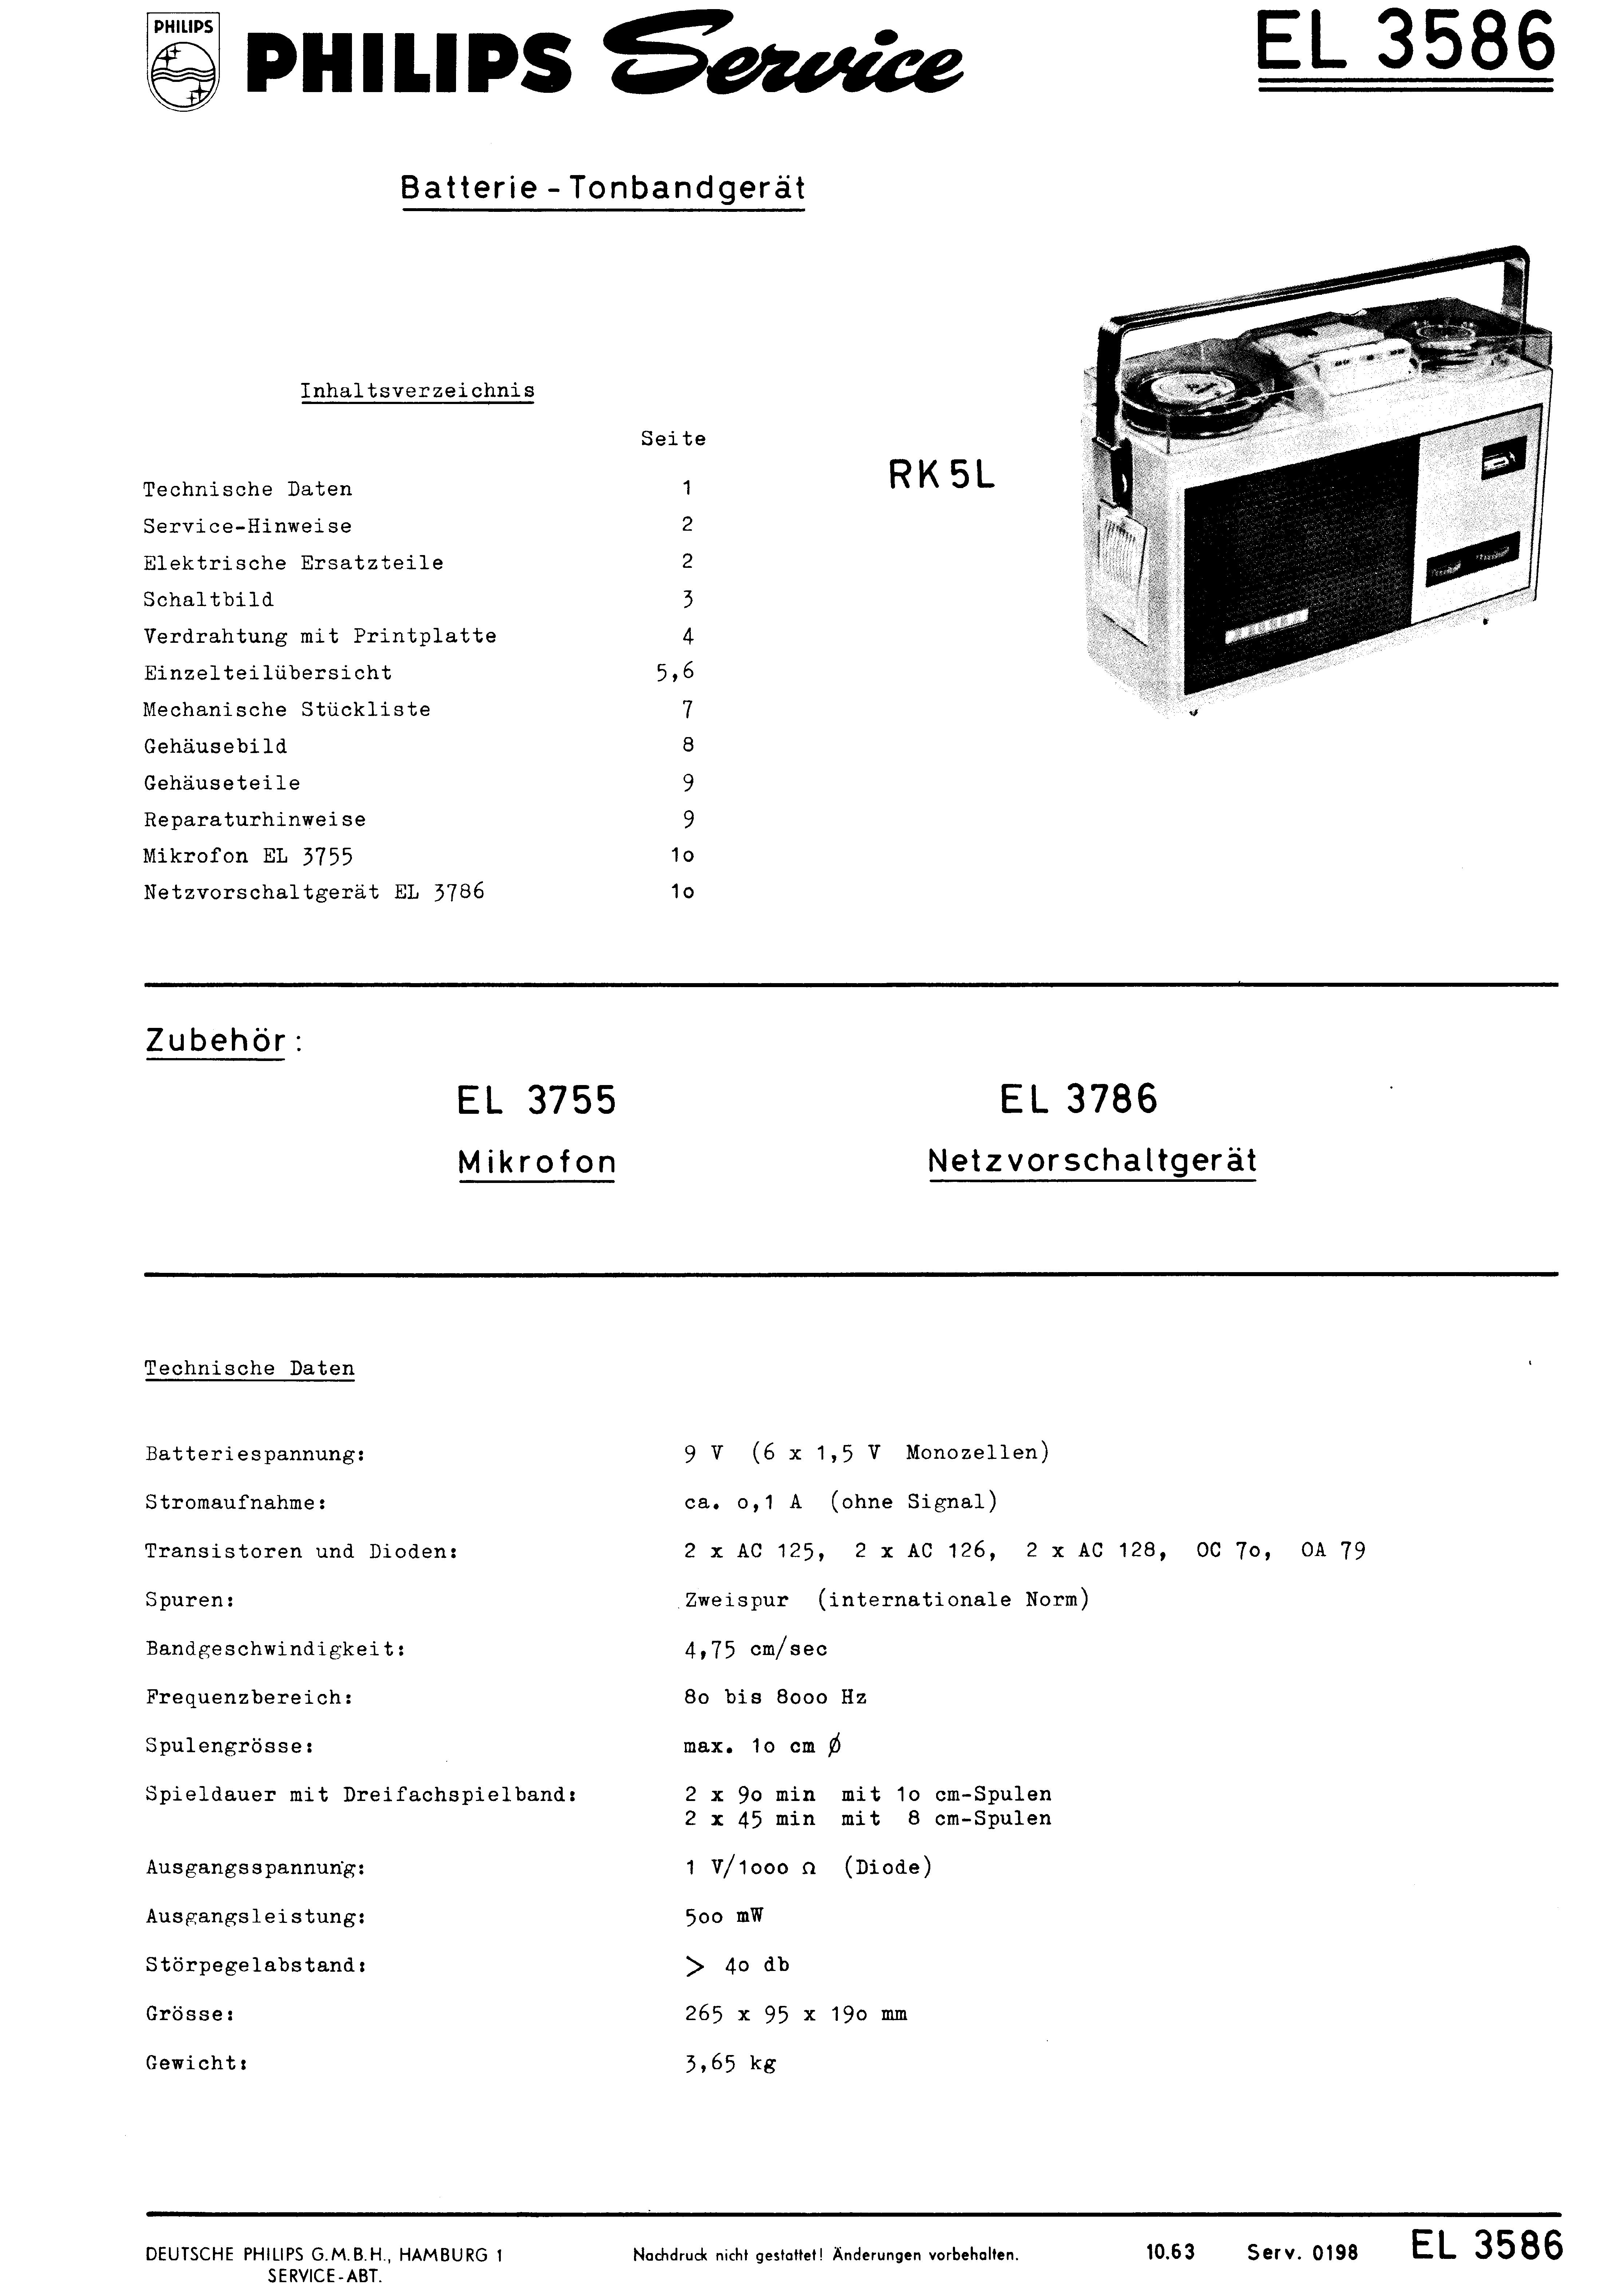 PHILIPS EL 3586 BATTERIE-TONBANDGERAET SM service manual (1st page)